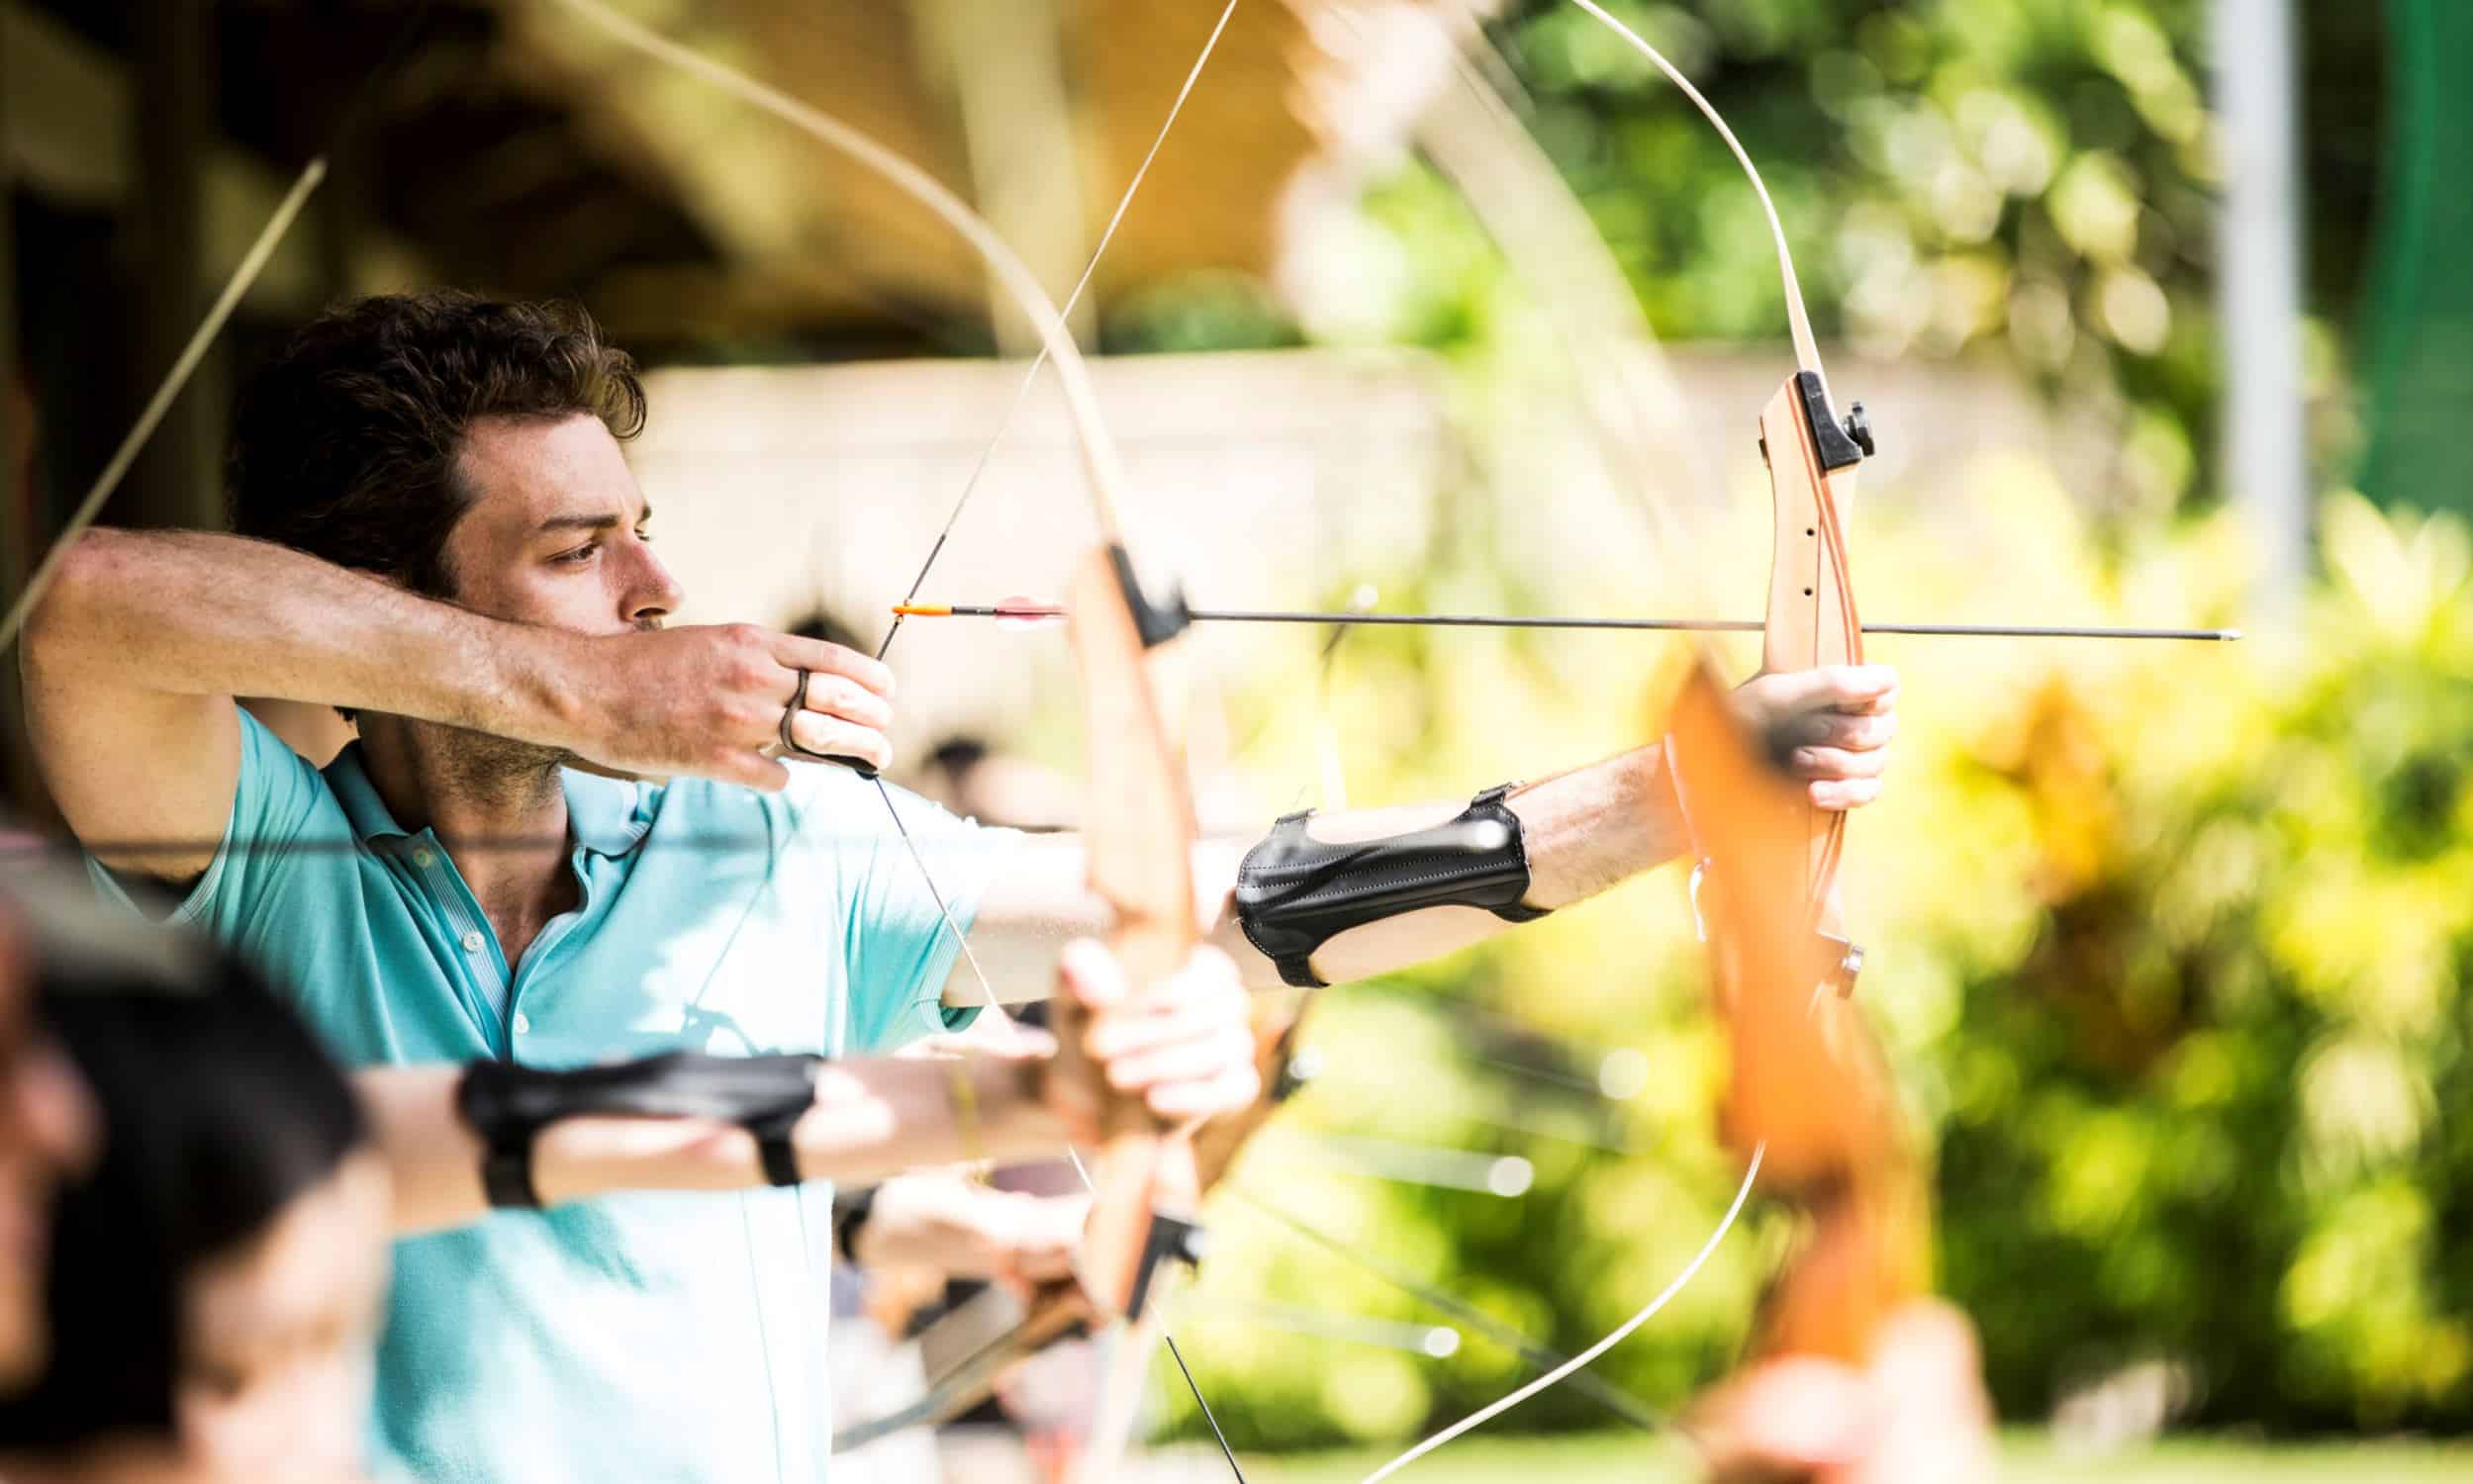 Club Med Bali Archery